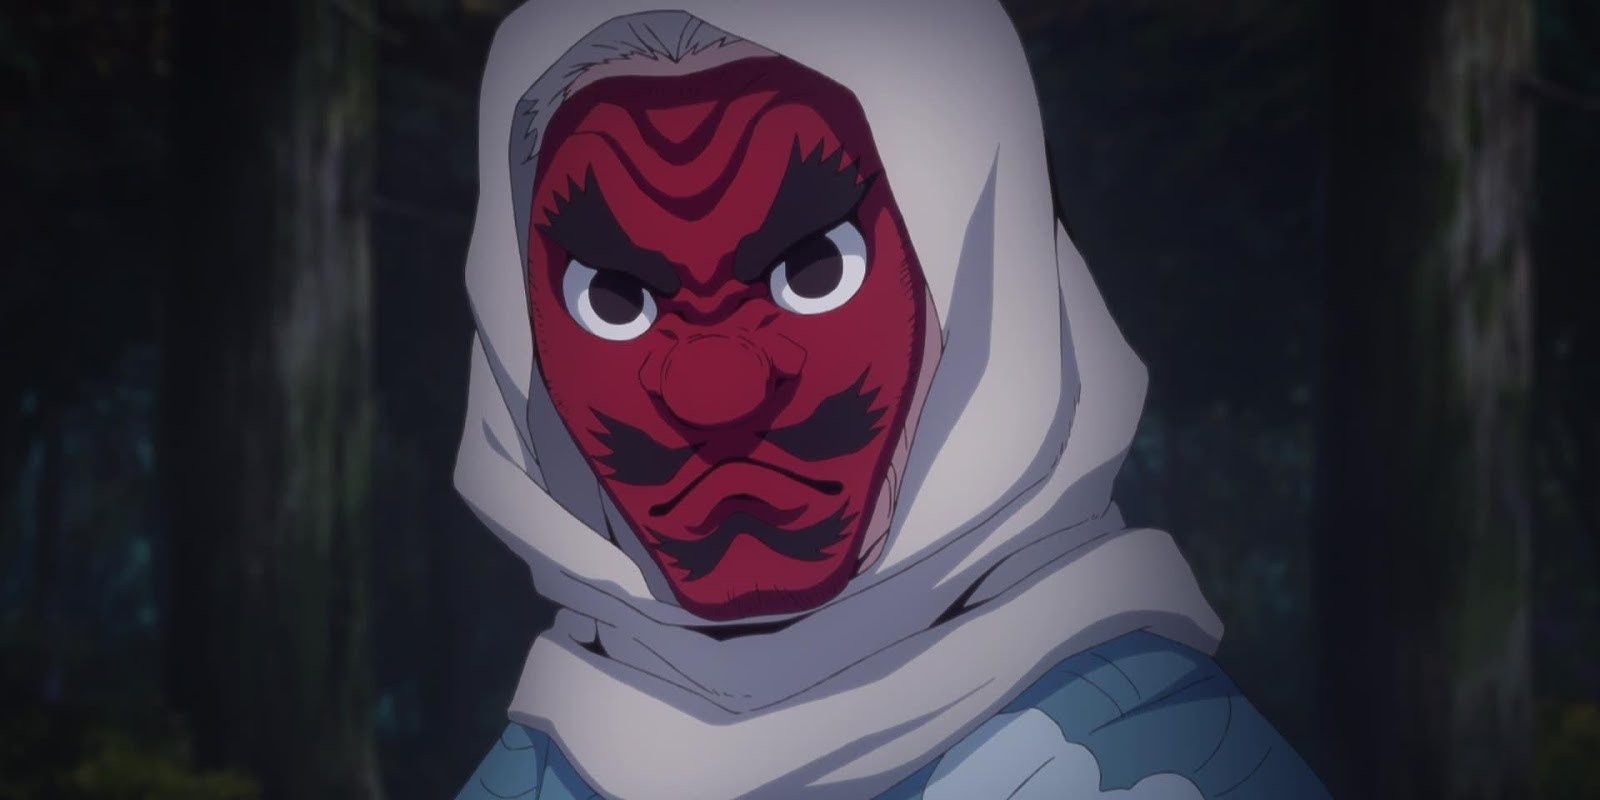 Sakonji from Demon Slayer wearing mask.